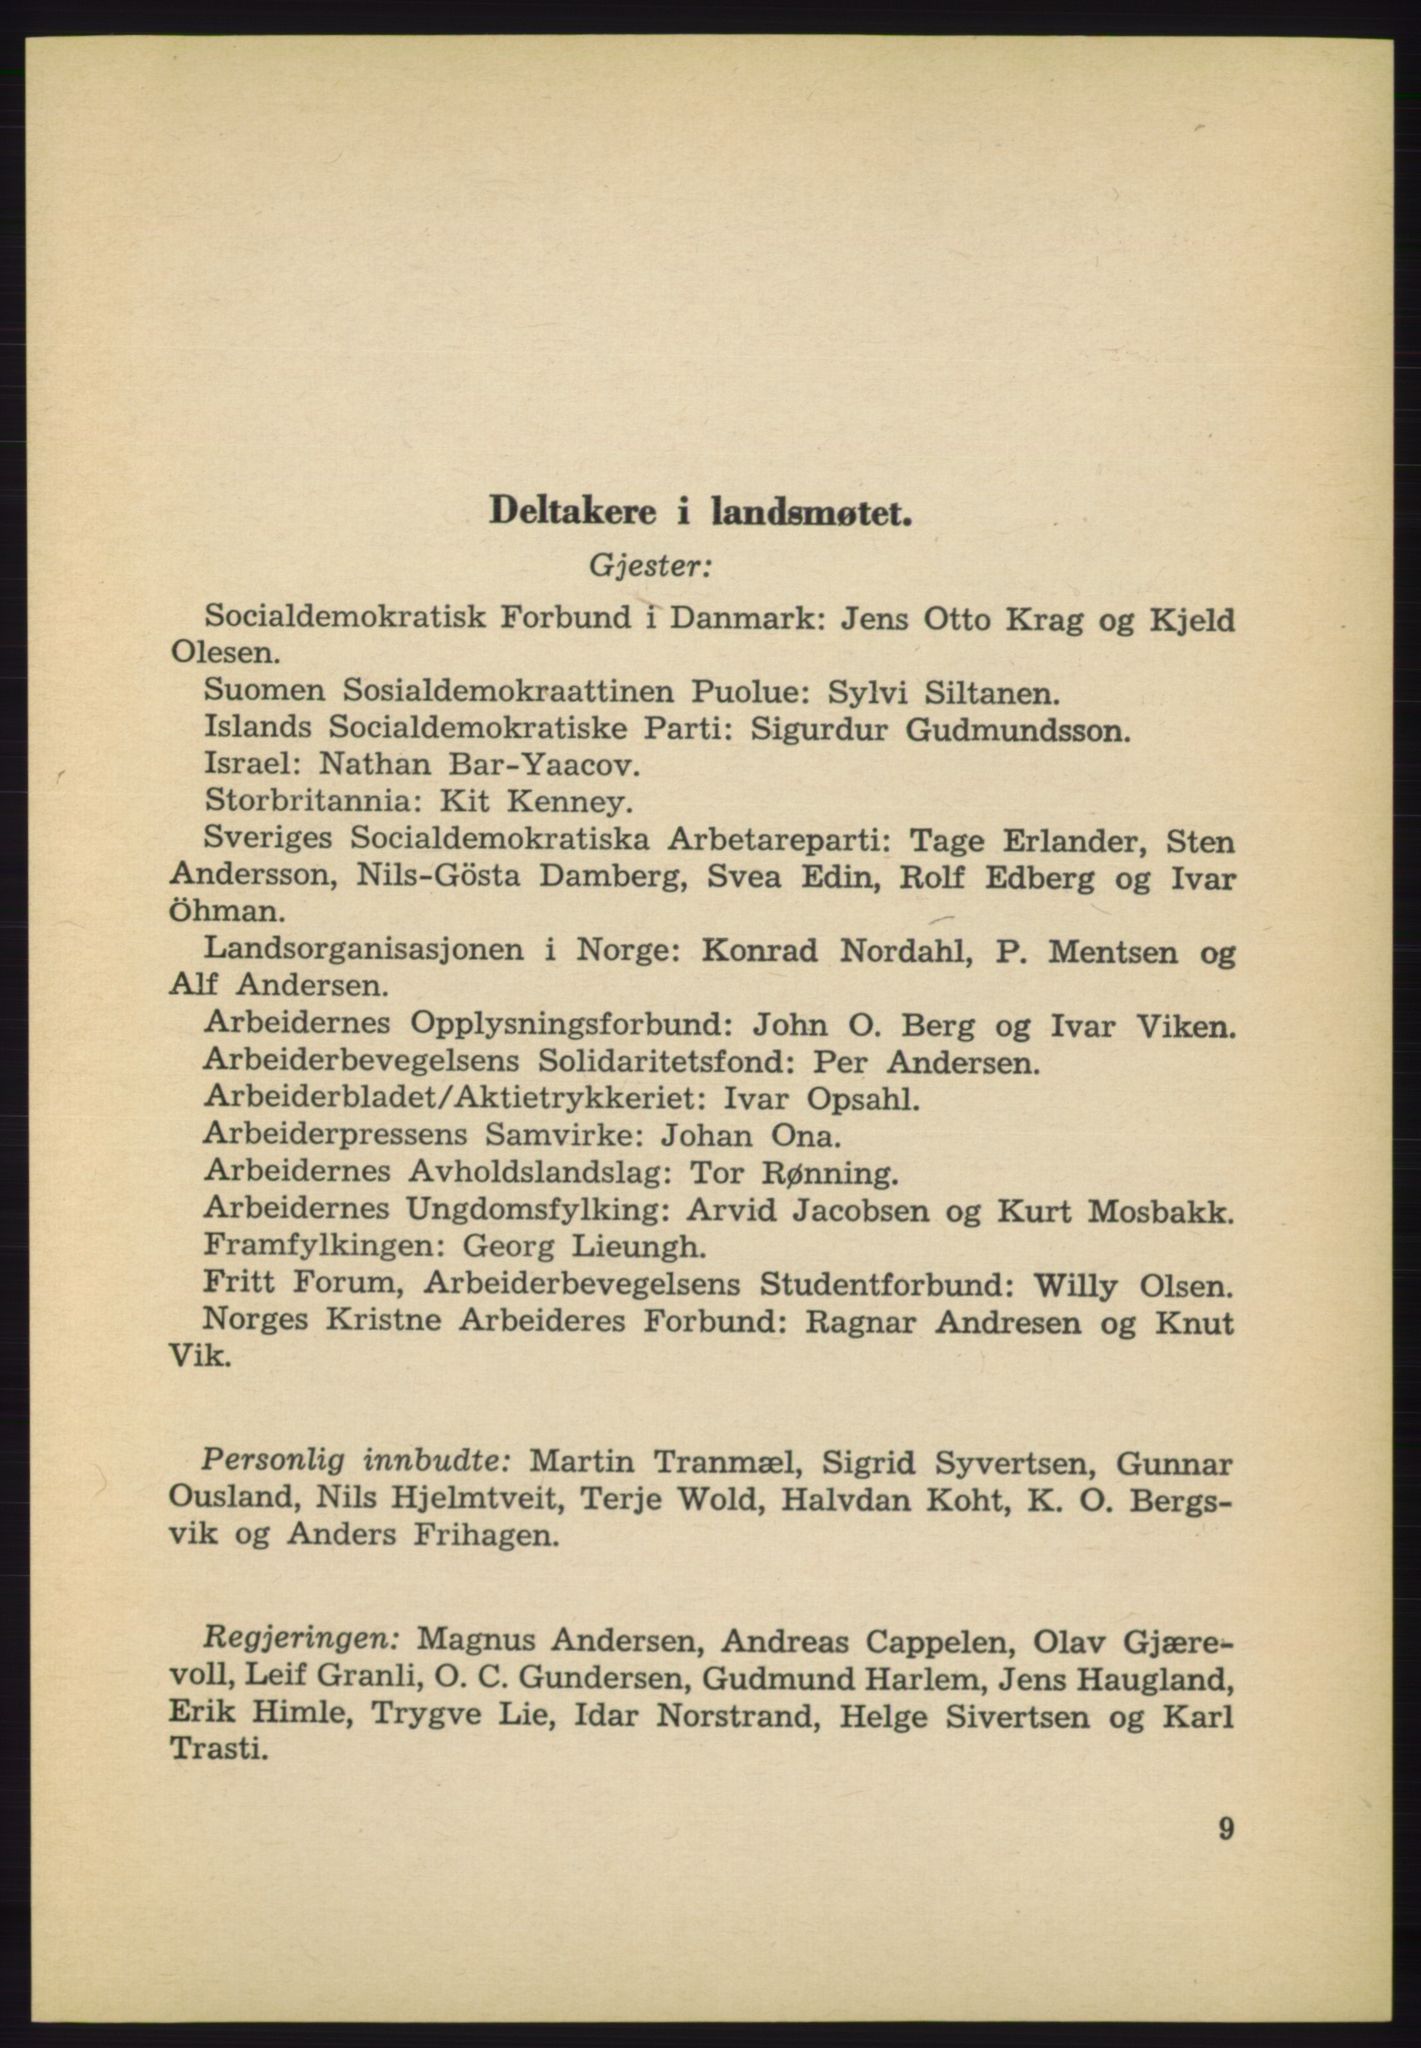 Det norske Arbeiderparti - publikasjoner, AAB/-/-/-: Protokoll over forhandlingene på det 40. ordinære landsmøte 27.-29. mai 1965 i Oslo, 1965, p. 9